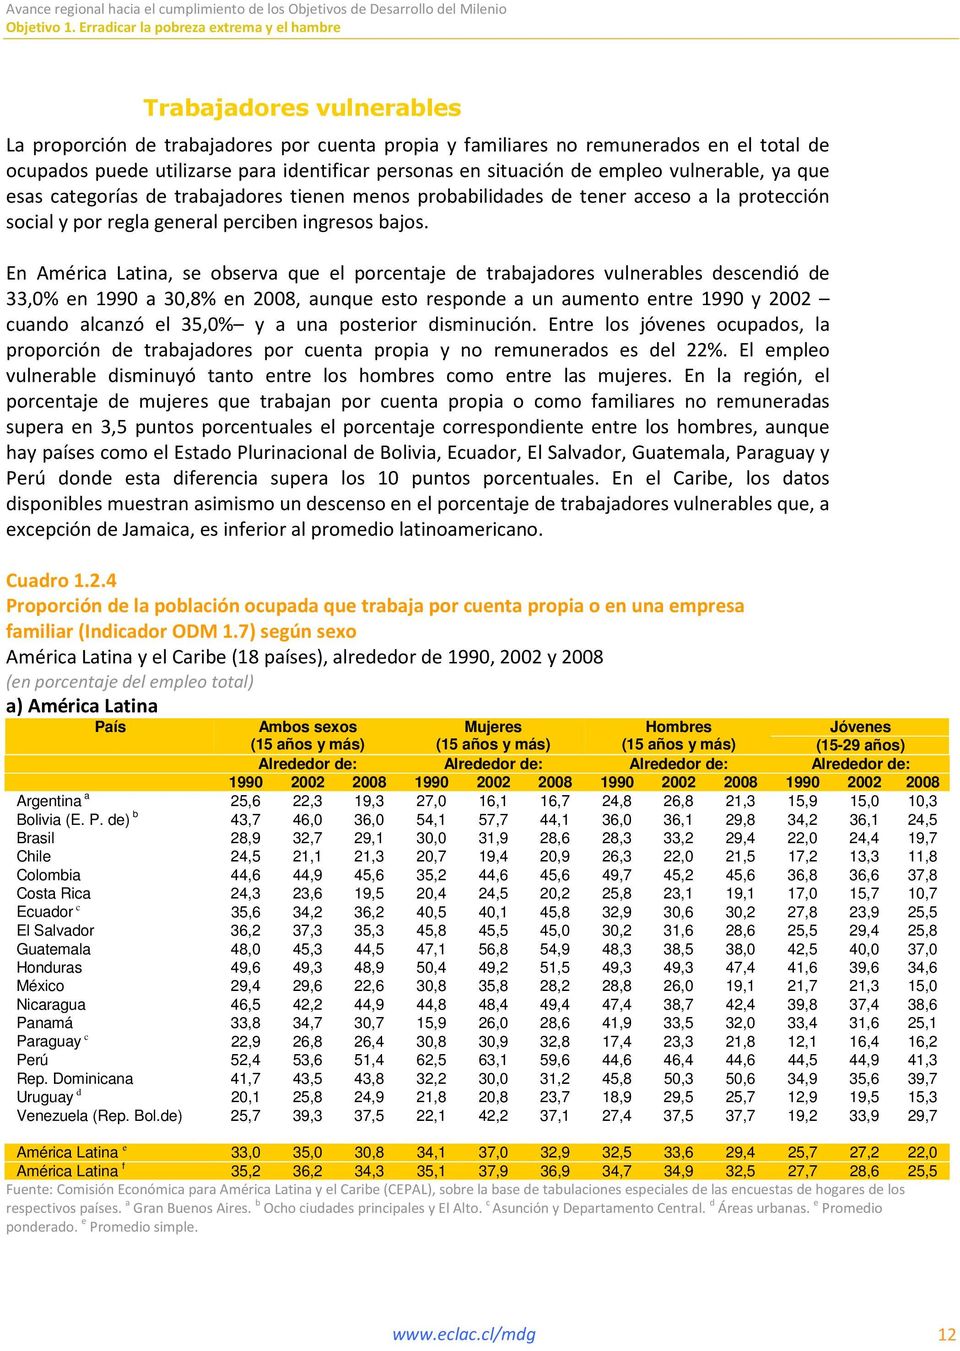 En América Latina, se observa que el porcentaje de trabajadores vulnerables descendió de 33,0% en 1990 a 30,8% en 2008, aunque esto responde a un aumento entre 1990 y 2002 cuando alcanzó el 35,0% y a